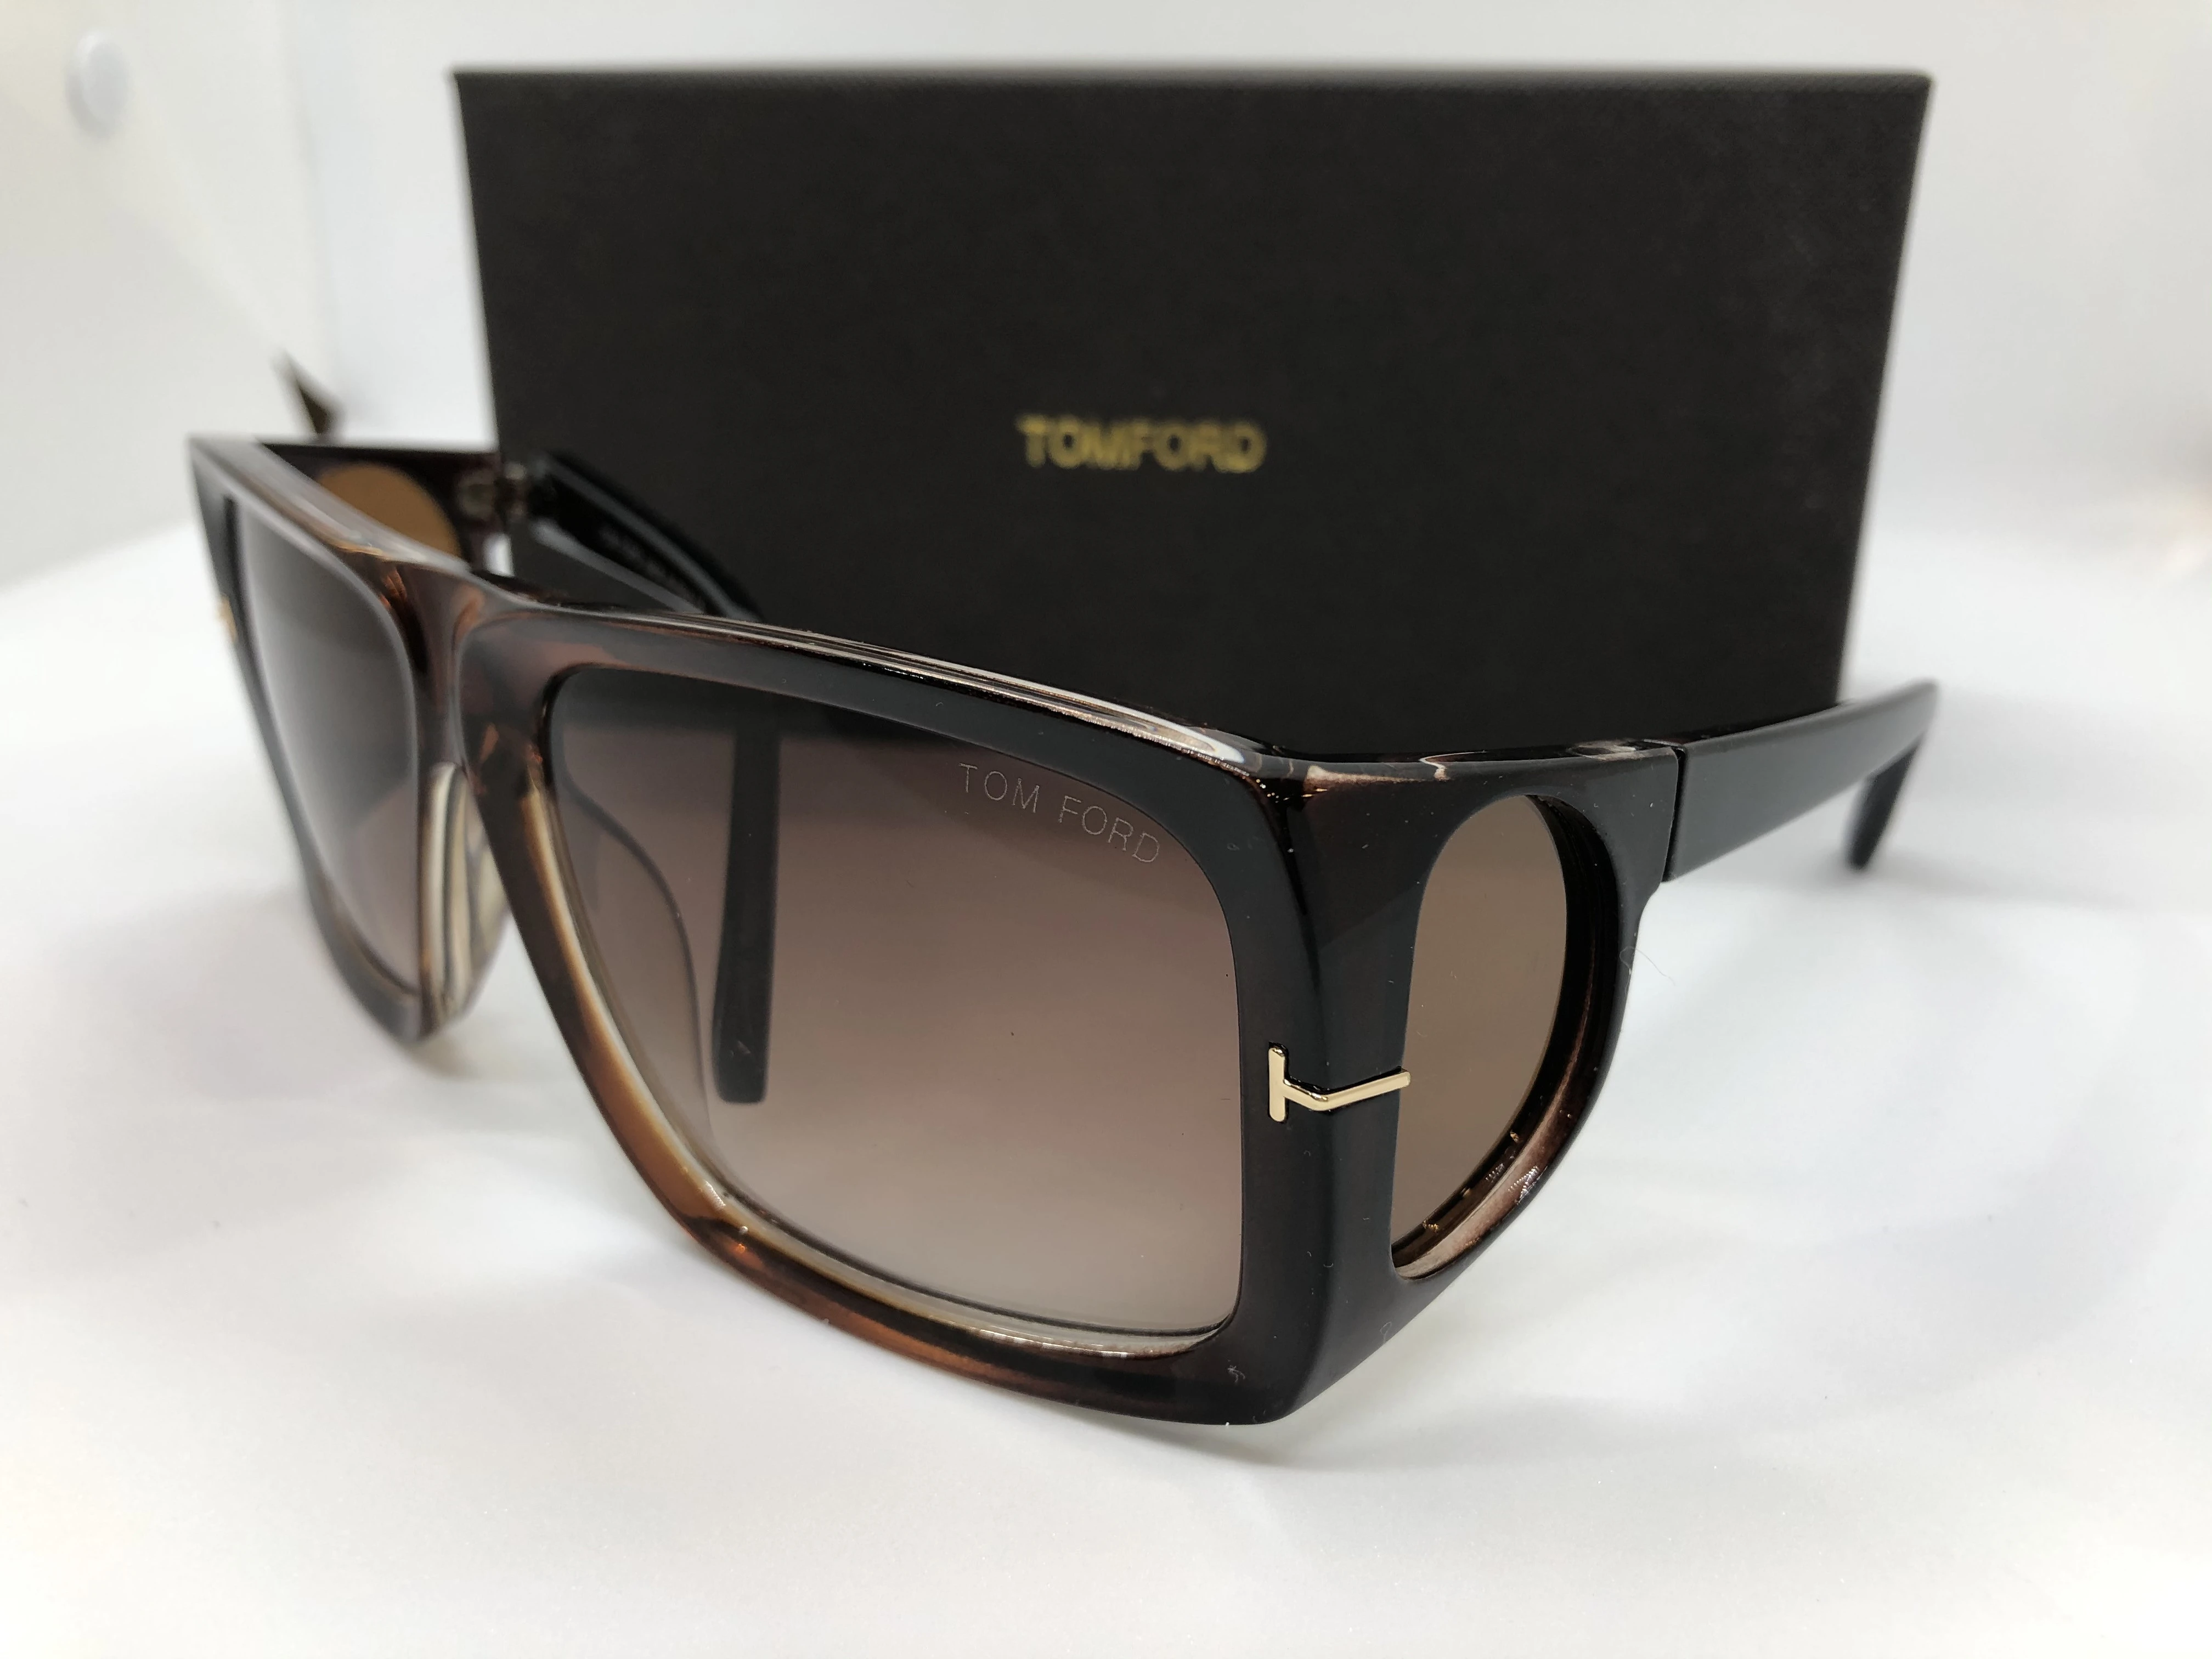 نظارة شمسية - من توم فورد - باطار بني غامق شفاف متدرج بولي كاربونات - وعدسات بني فاتح متدرج - وزراع بولي كاربونات بني غامق- حريمي